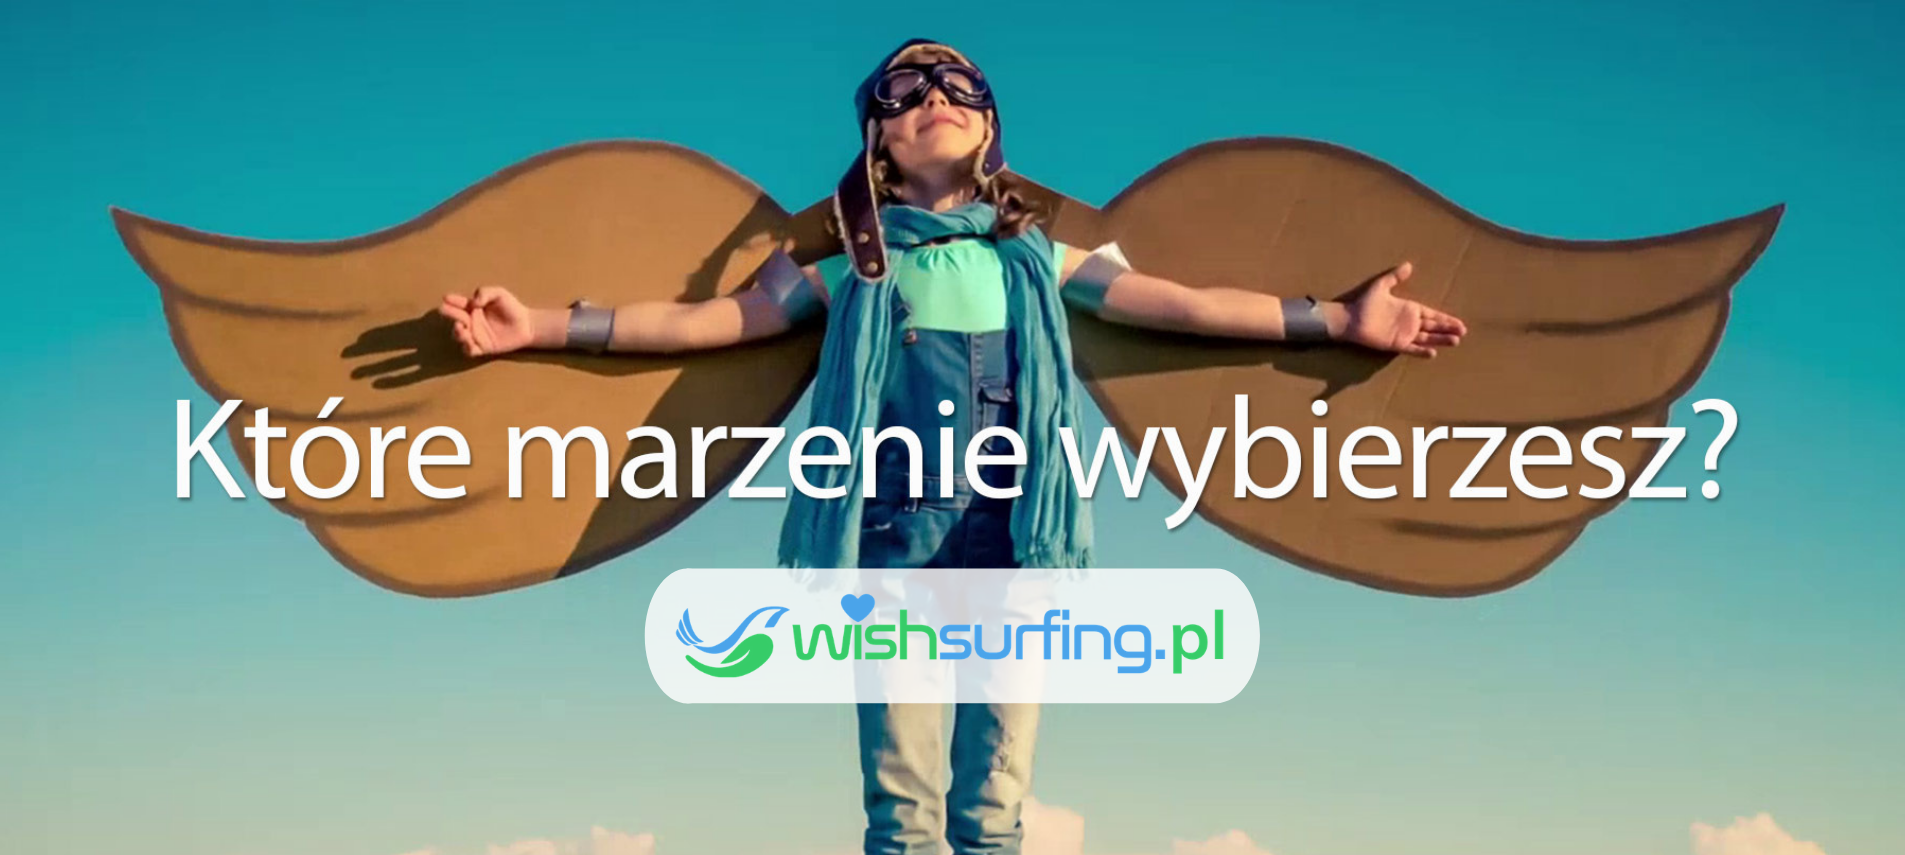 Slajder – wishsurfing.pl